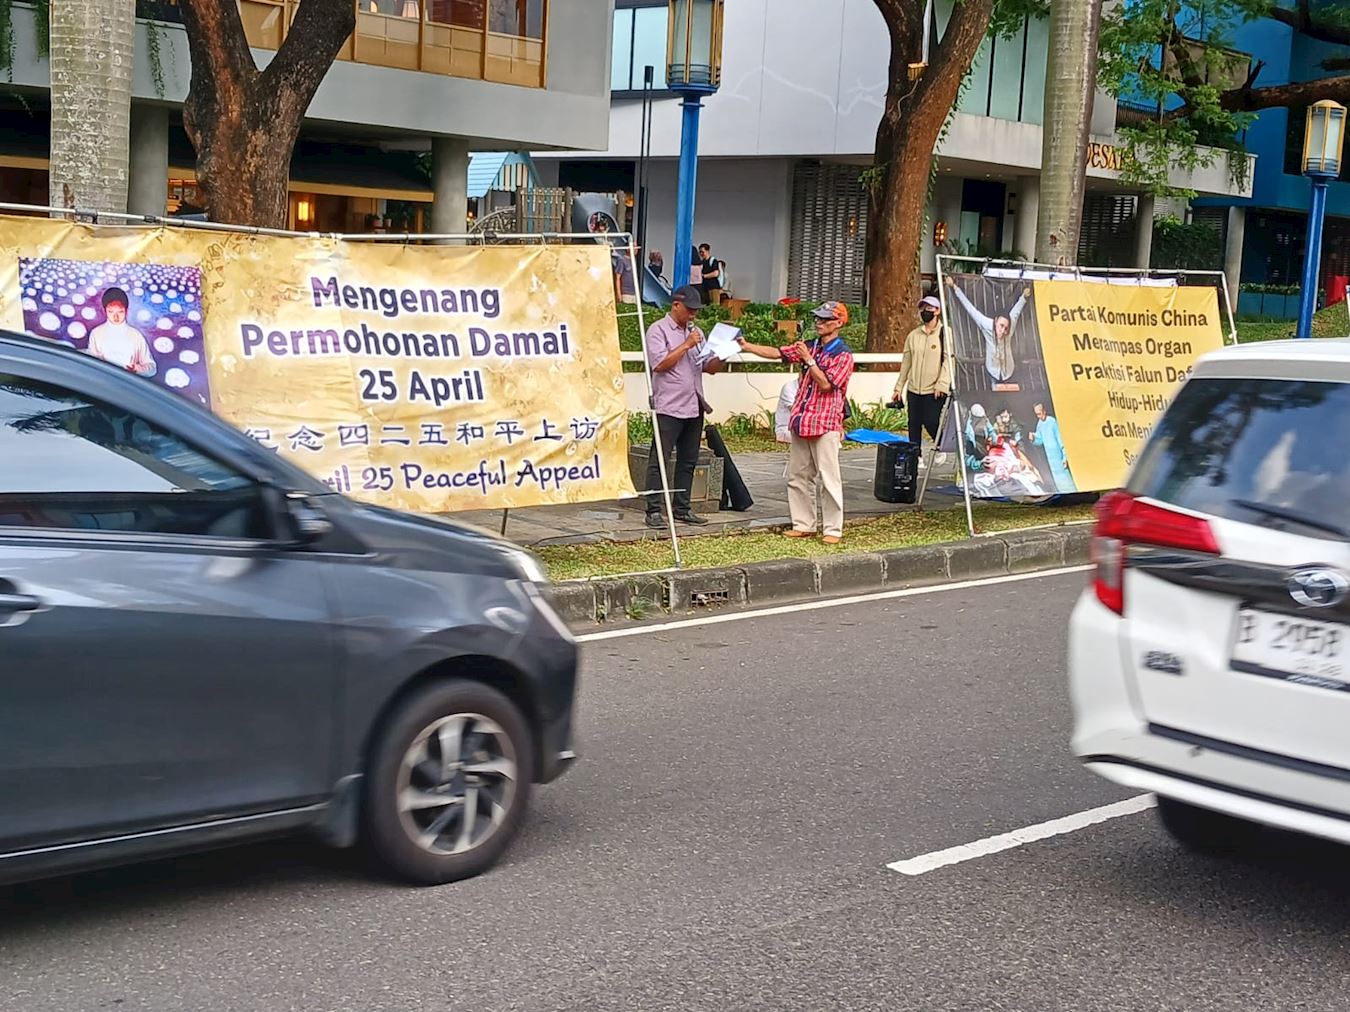 '图1：二零二四年四月二十日，为纪念四二五和平理性上访25周年，法轮功学员在印尼雅加达（Jakarta）的中国驻印尼大使馆前举办和平请愿活动。'